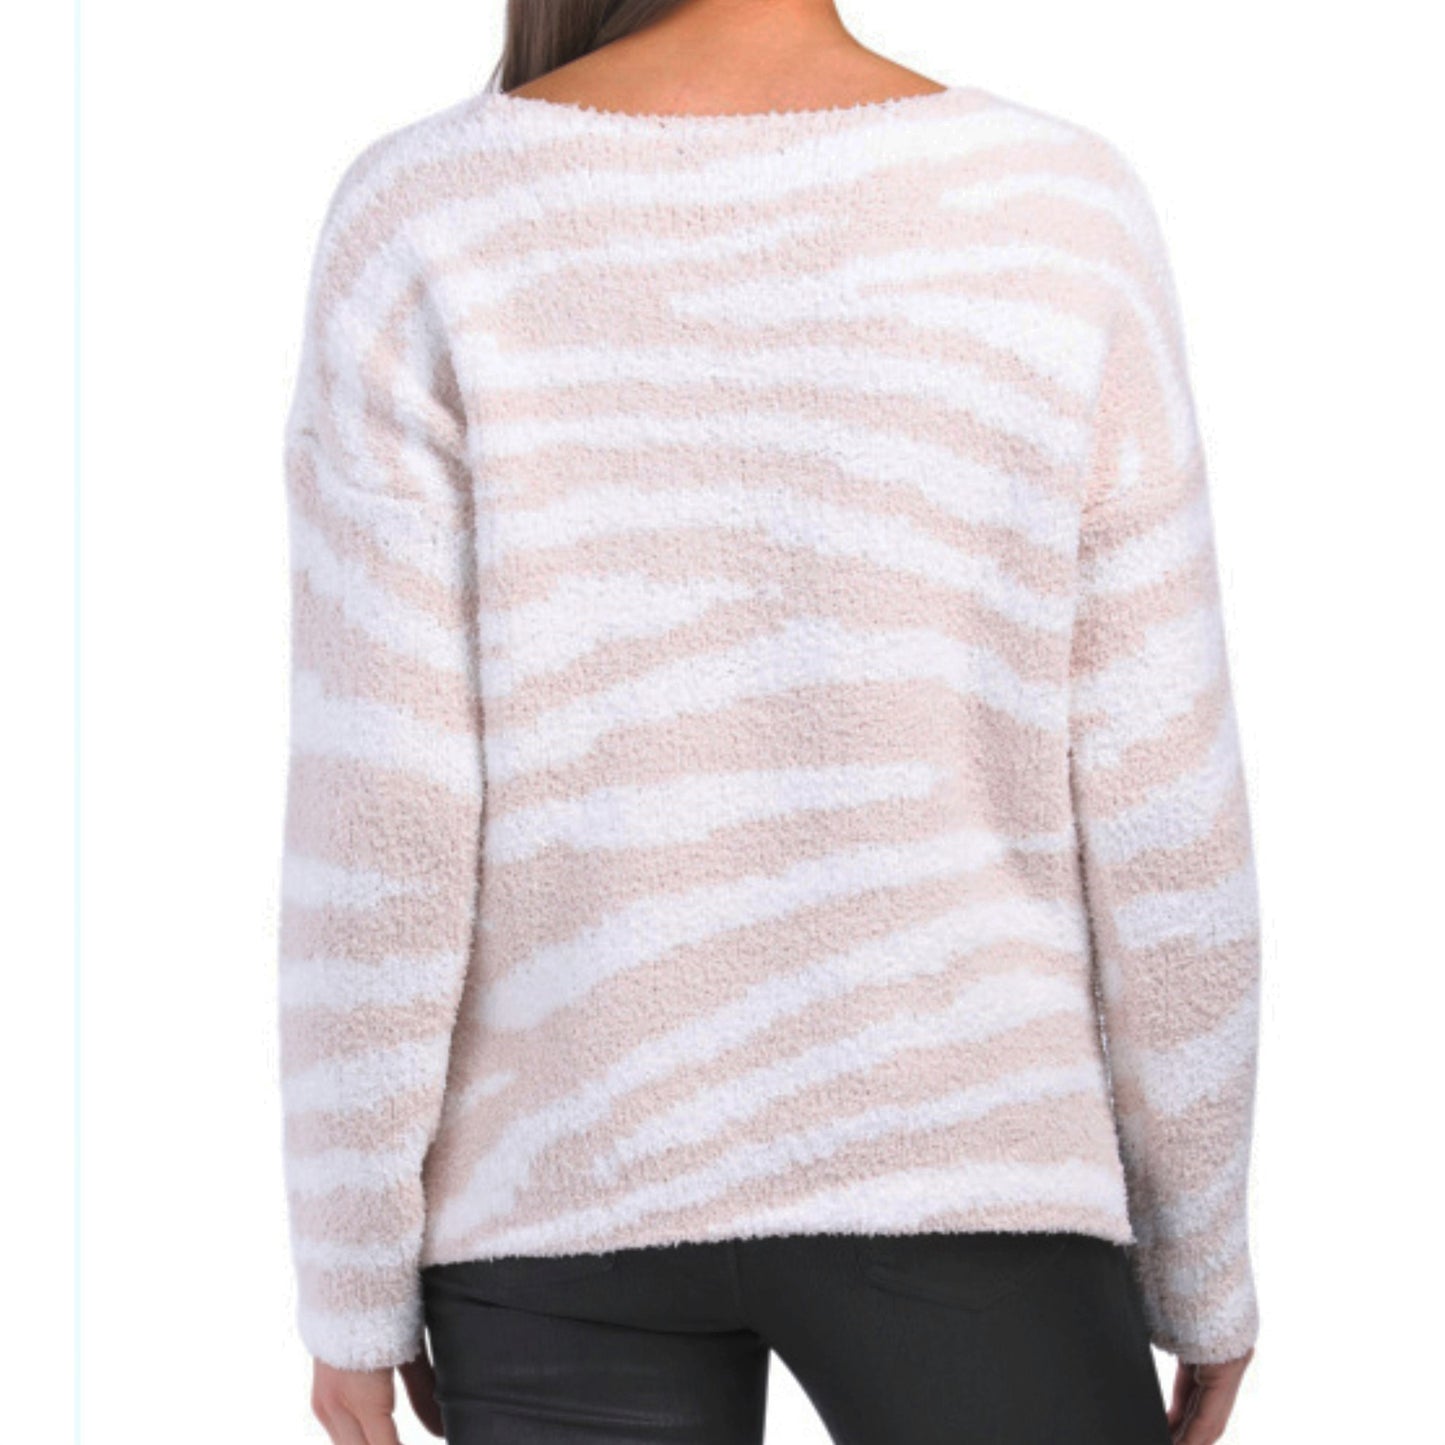 Rachel Zoe V-Neck Hi-Low Hem Fuzzy Knit Zebra Print Cozy Sweater